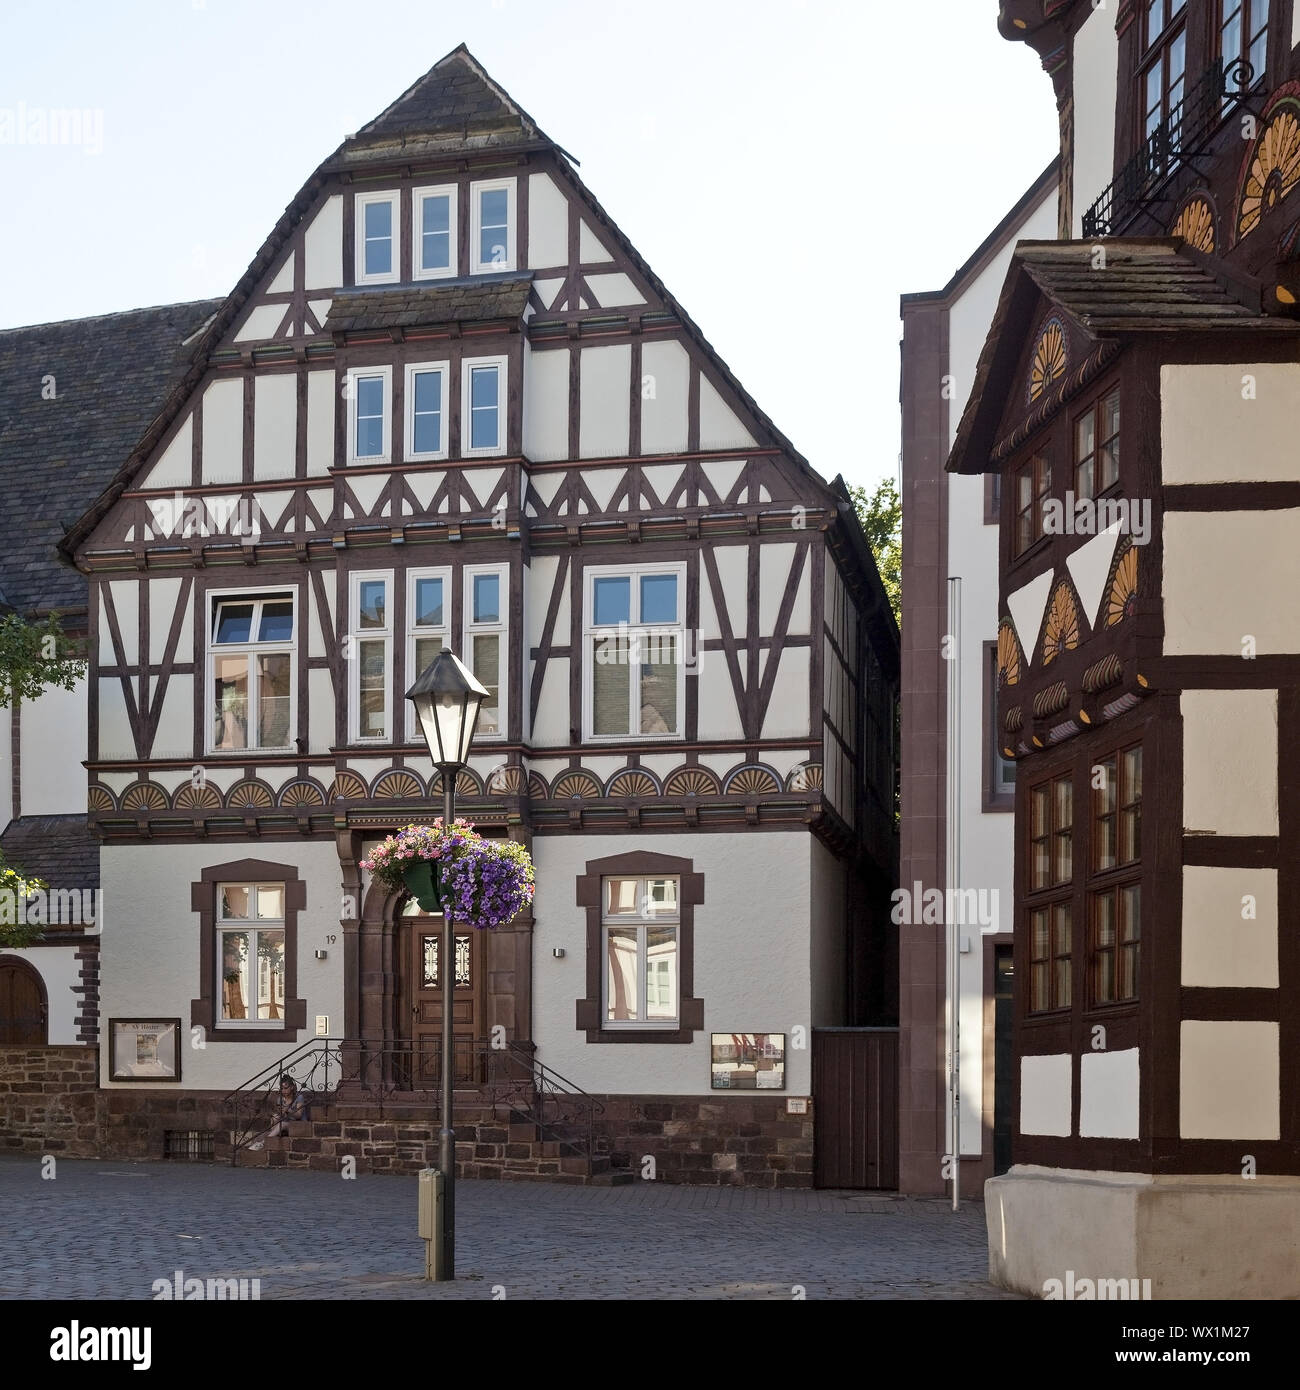 Maison à colombages historique, Vieille Ville, Hoexter, Weserbergland, à l'Est de la Westphalie, Allemagne, Europe Banque D'Images